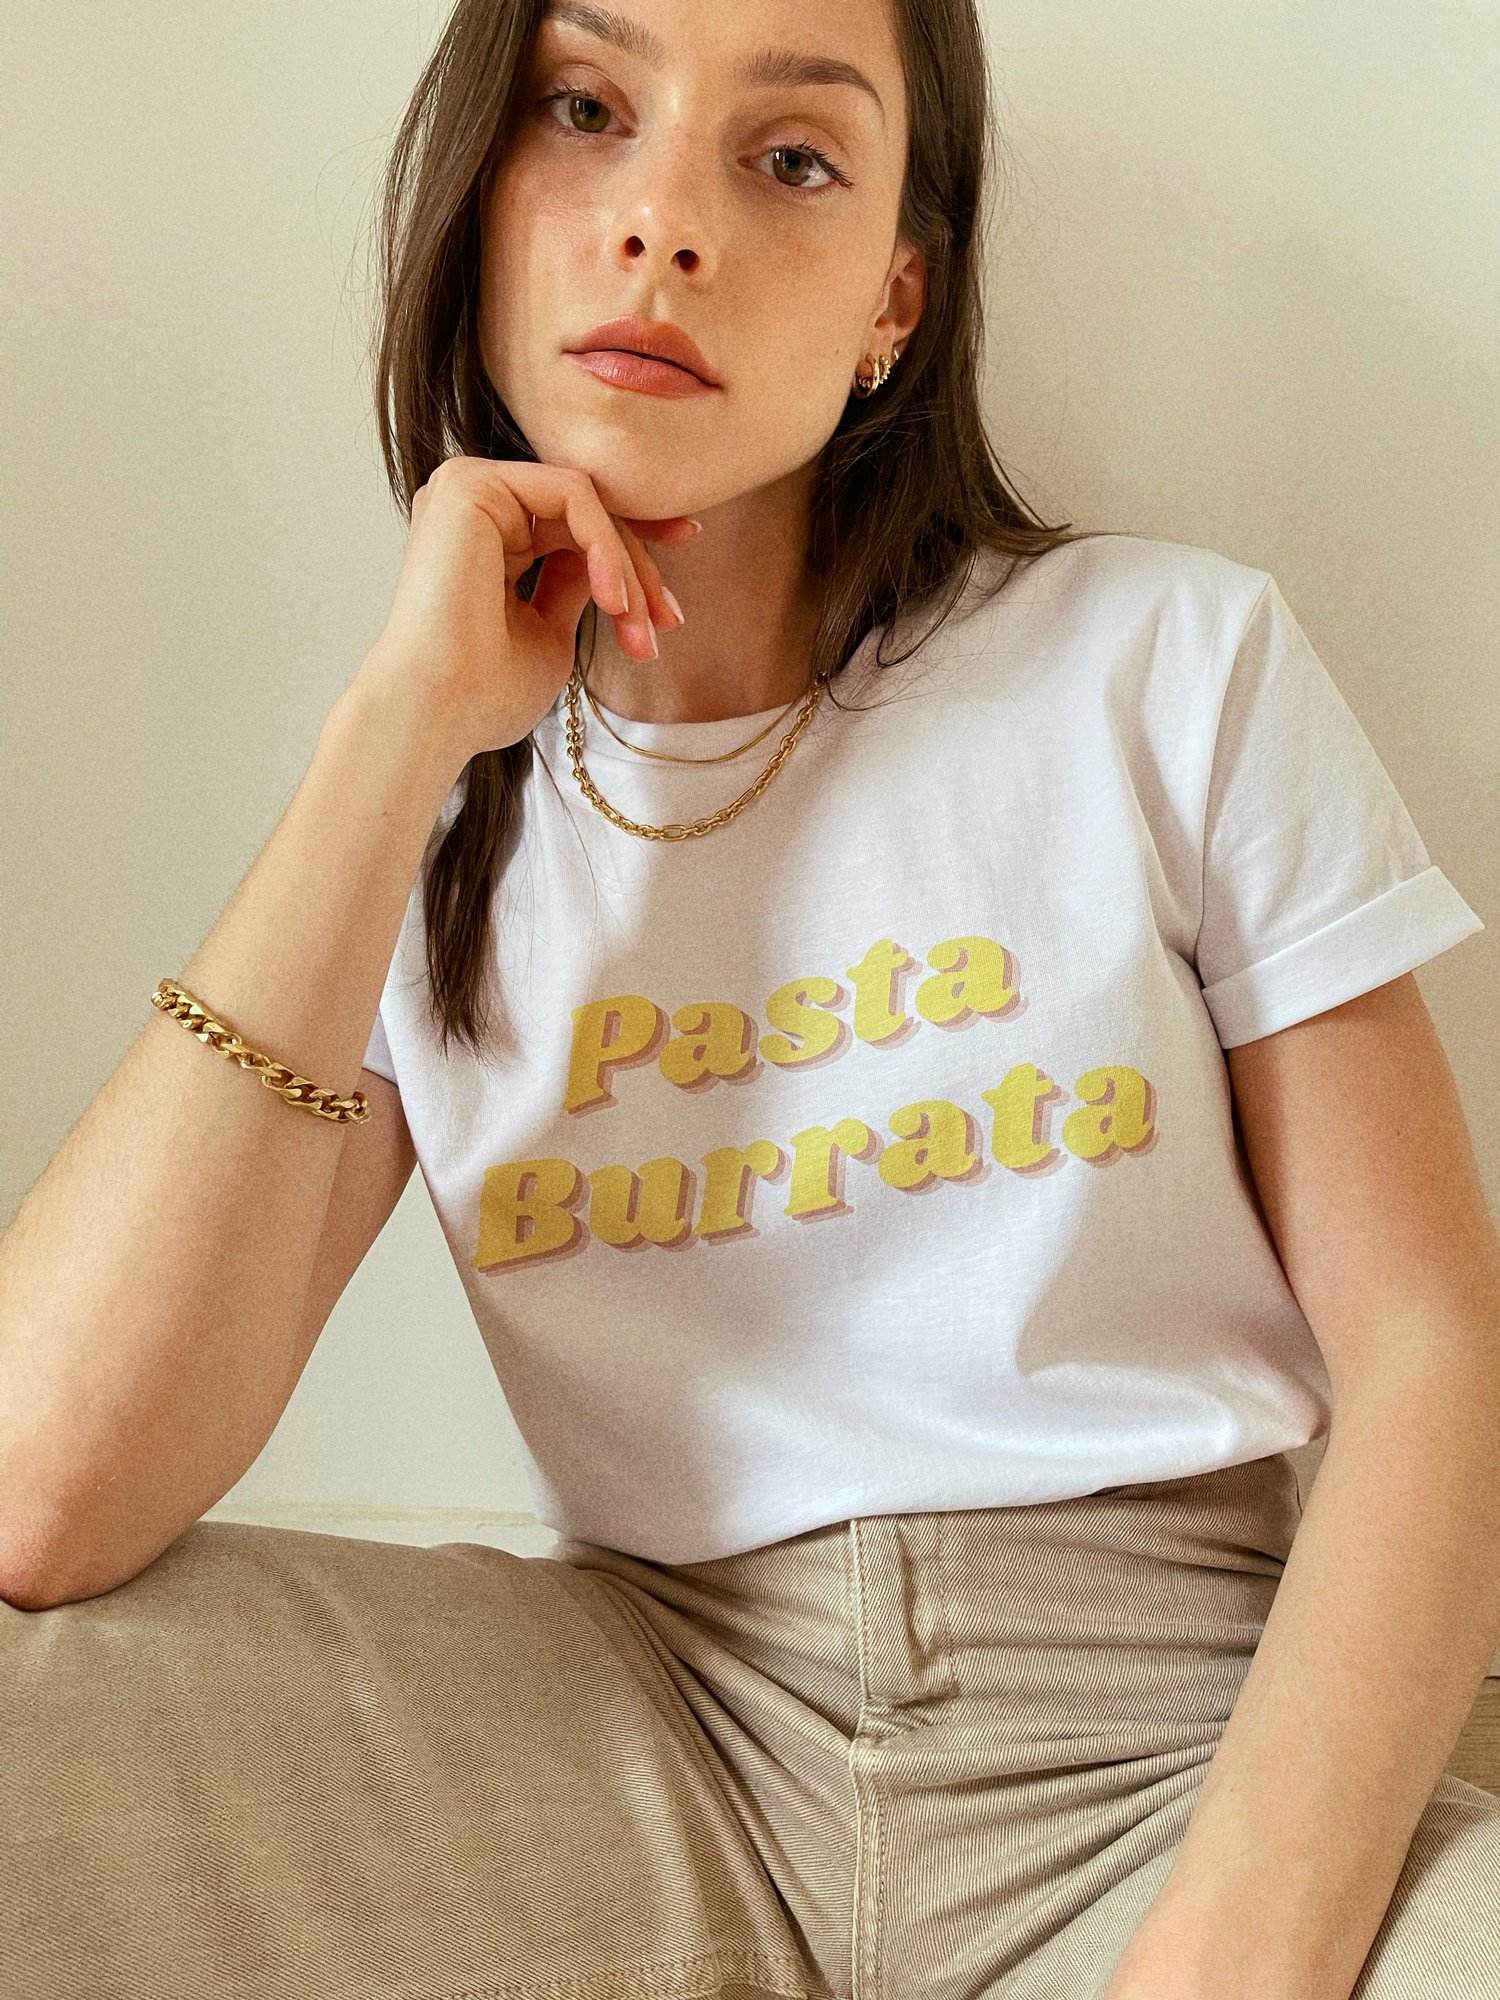 T-shirt - Pasta Burrata — Amour Singulier